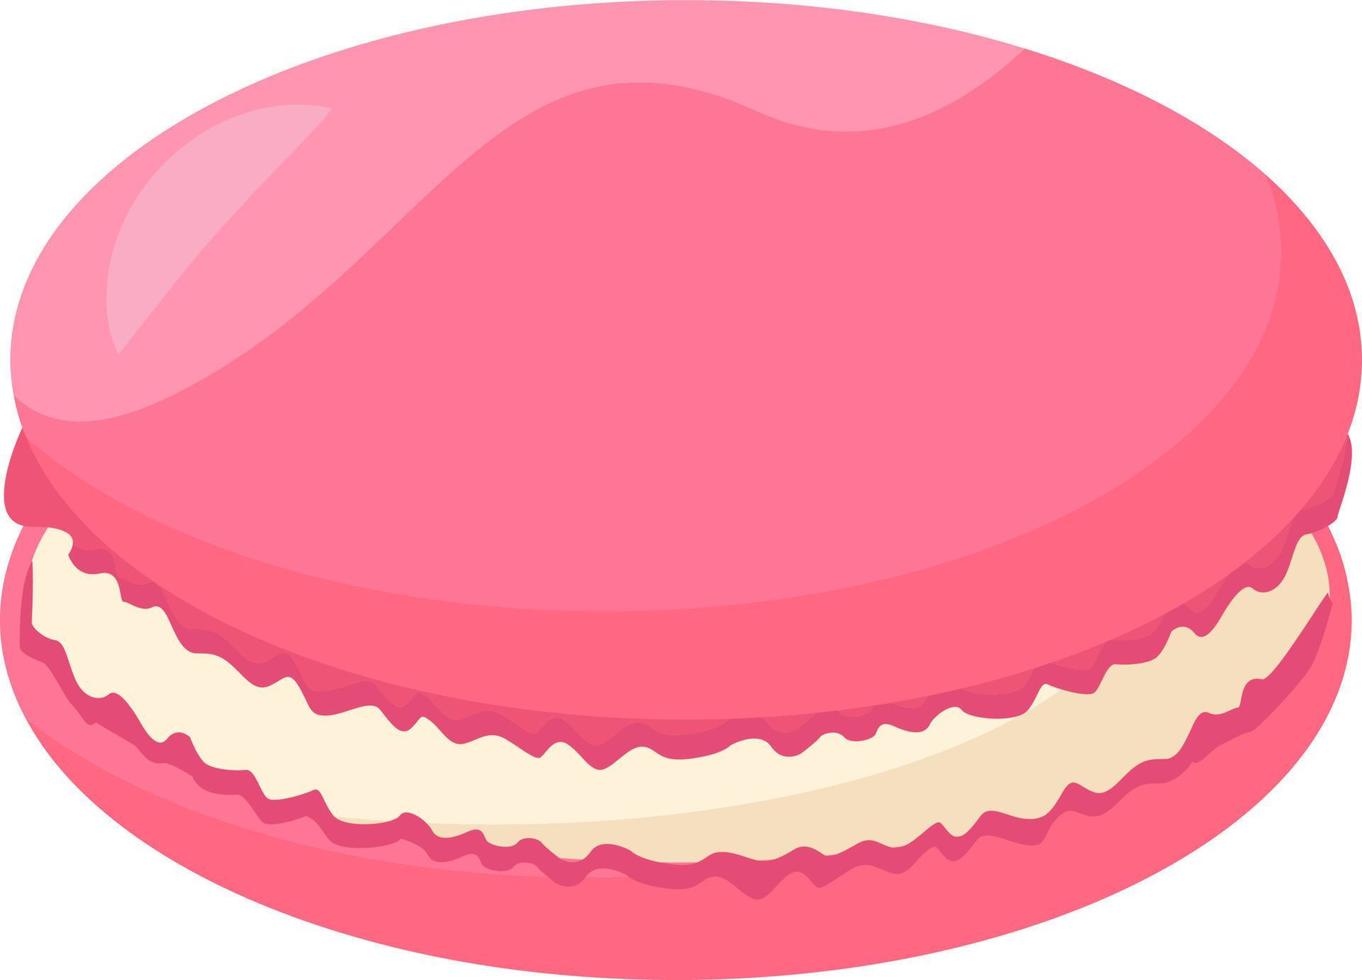 rosa macaron, illustration, vektor på vit bakgrund.